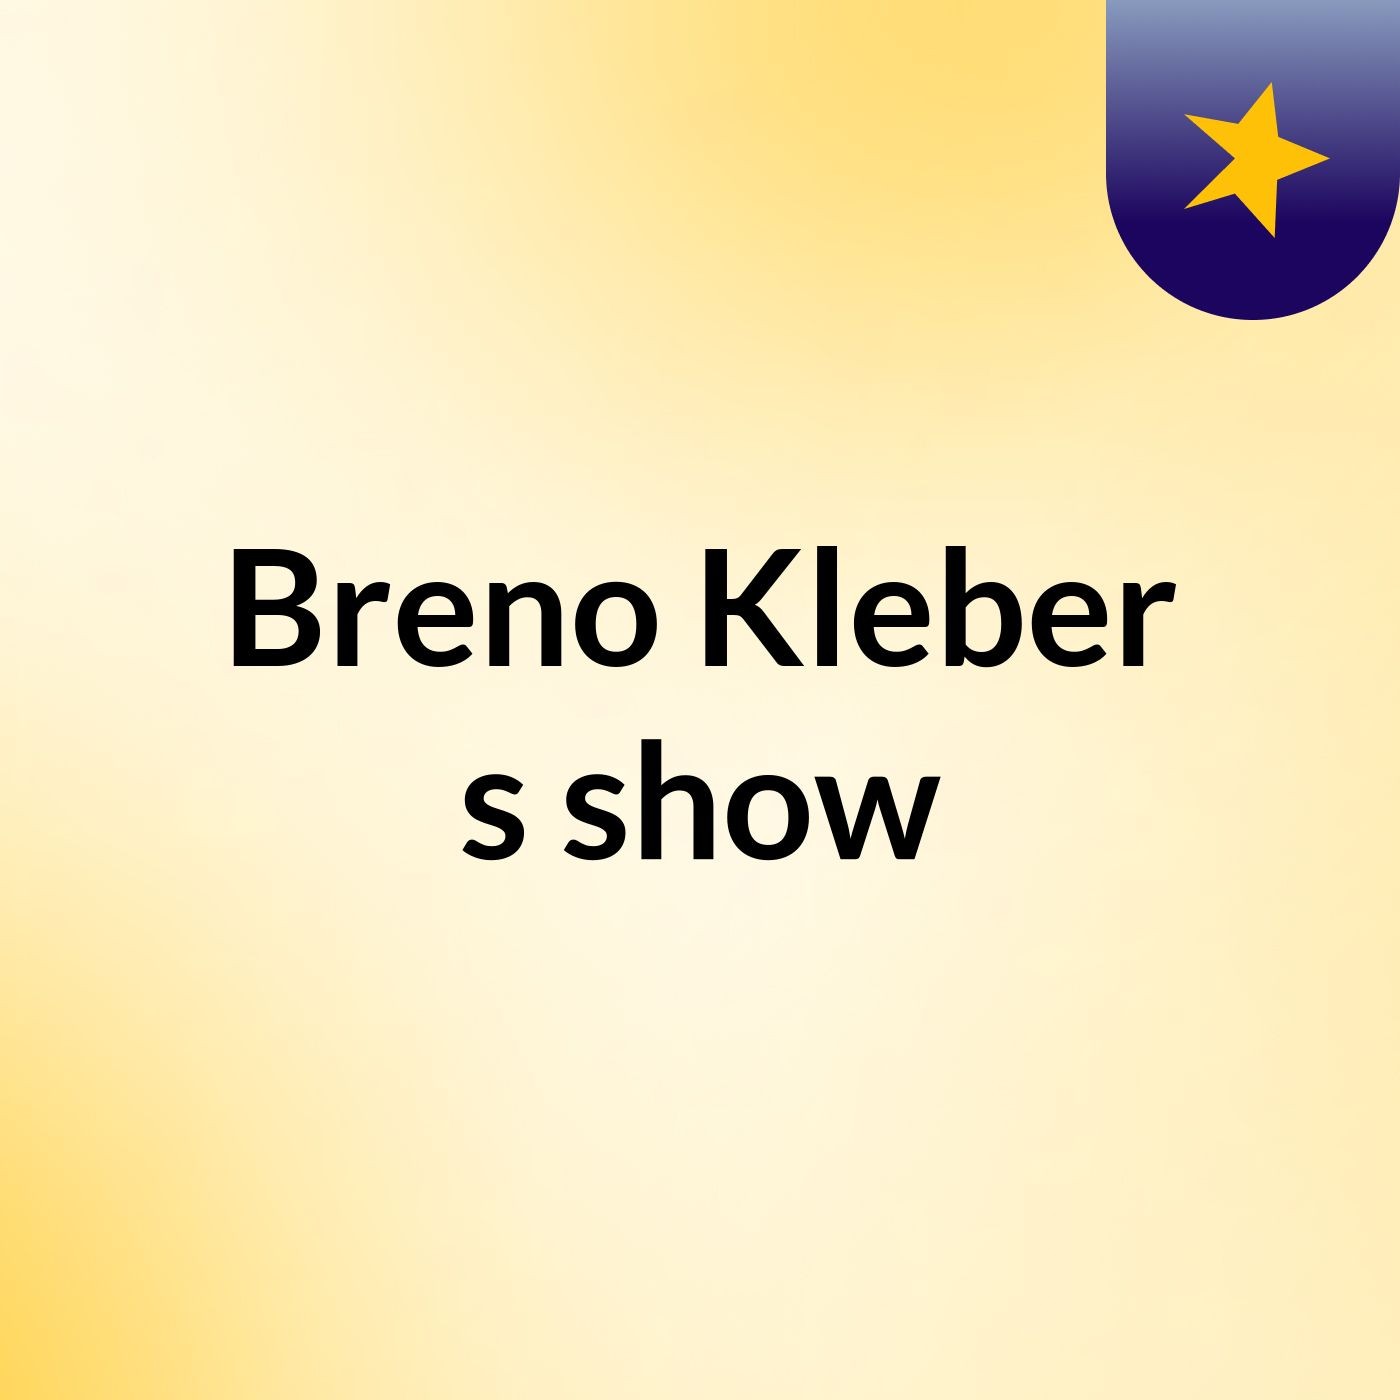 Breno Kleber's show